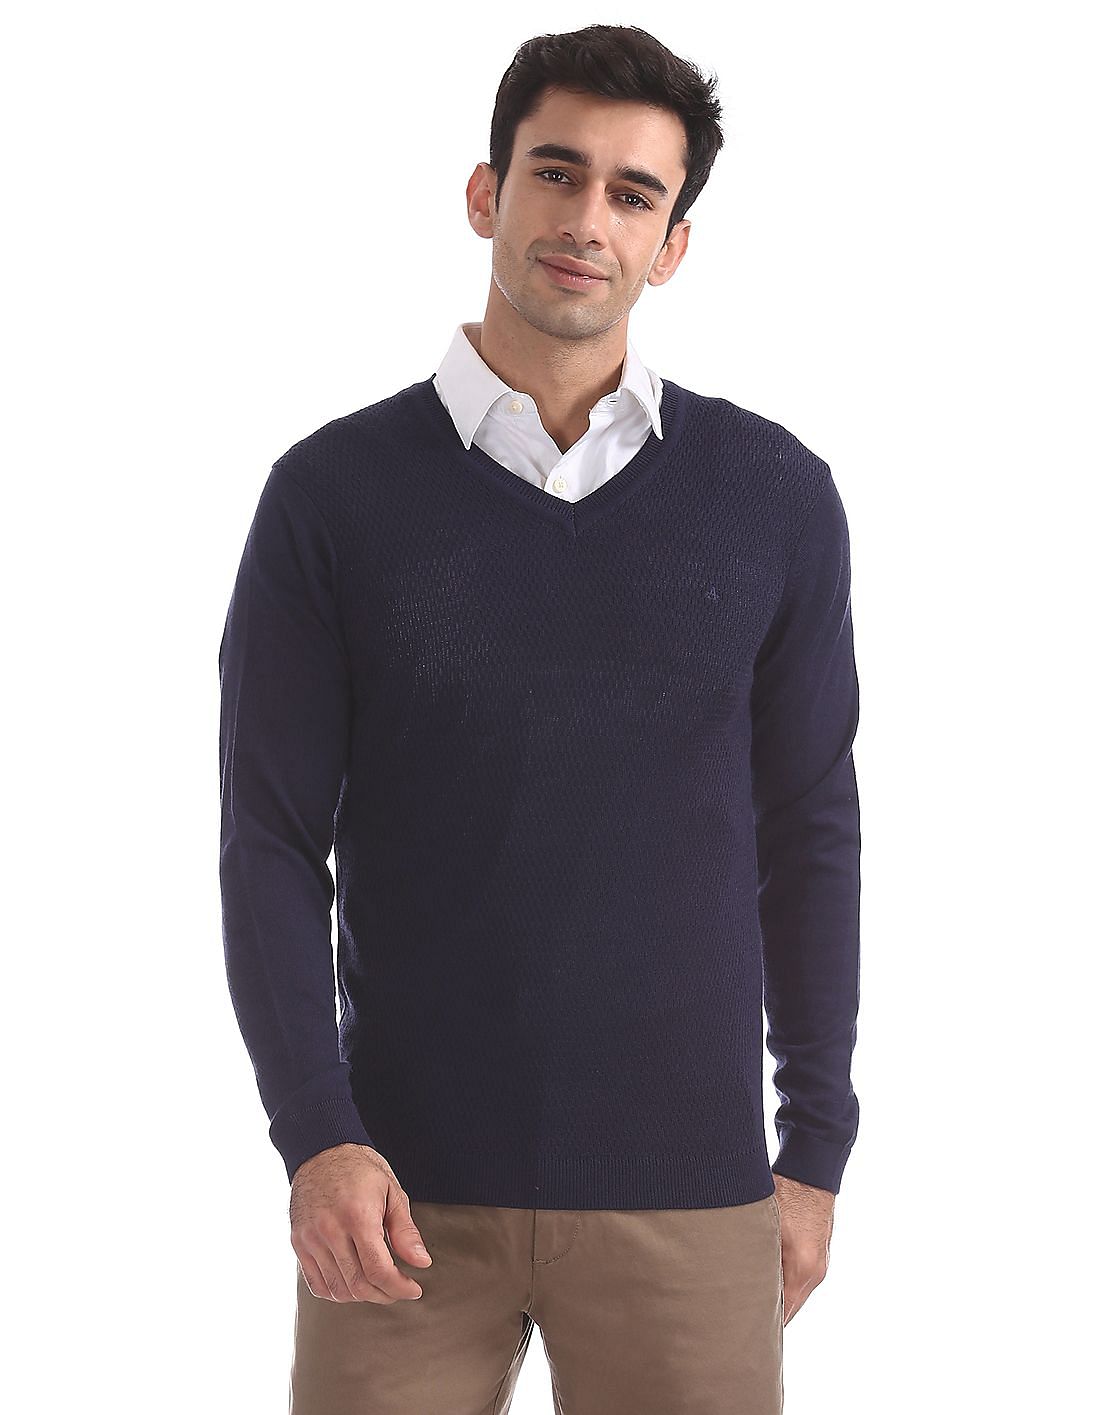 Buy Men Patterned Front V-Neck Sweater online at NNNOW.com